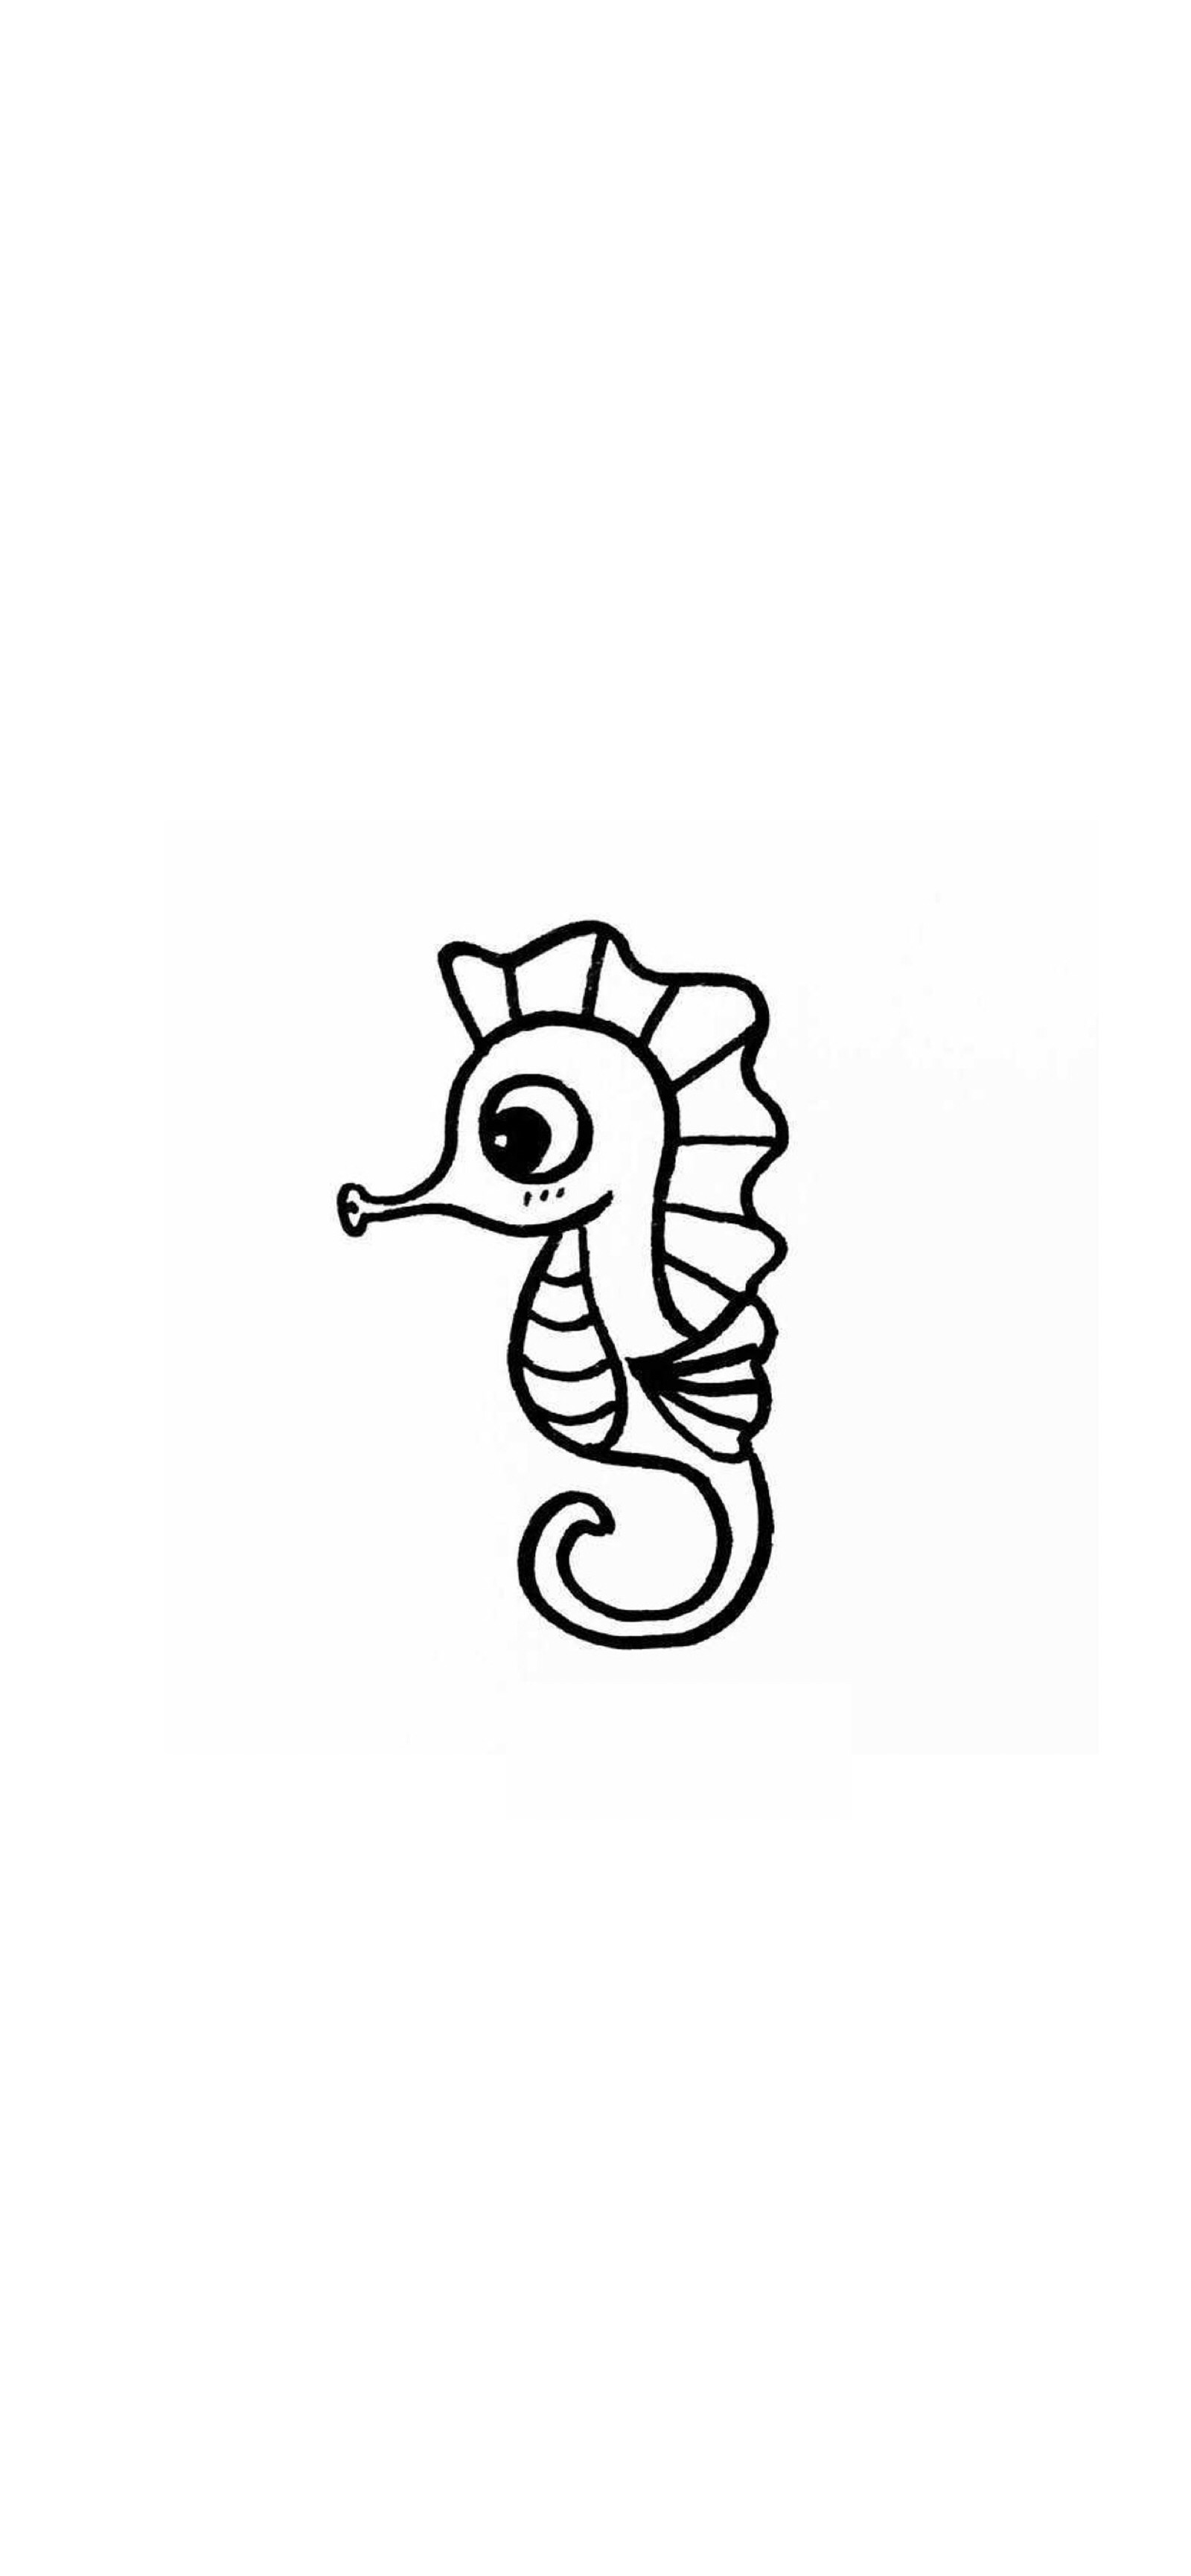 海马简笔画插图(海马、简笔画、动物、卡通)手绘插图_北极熊素材库